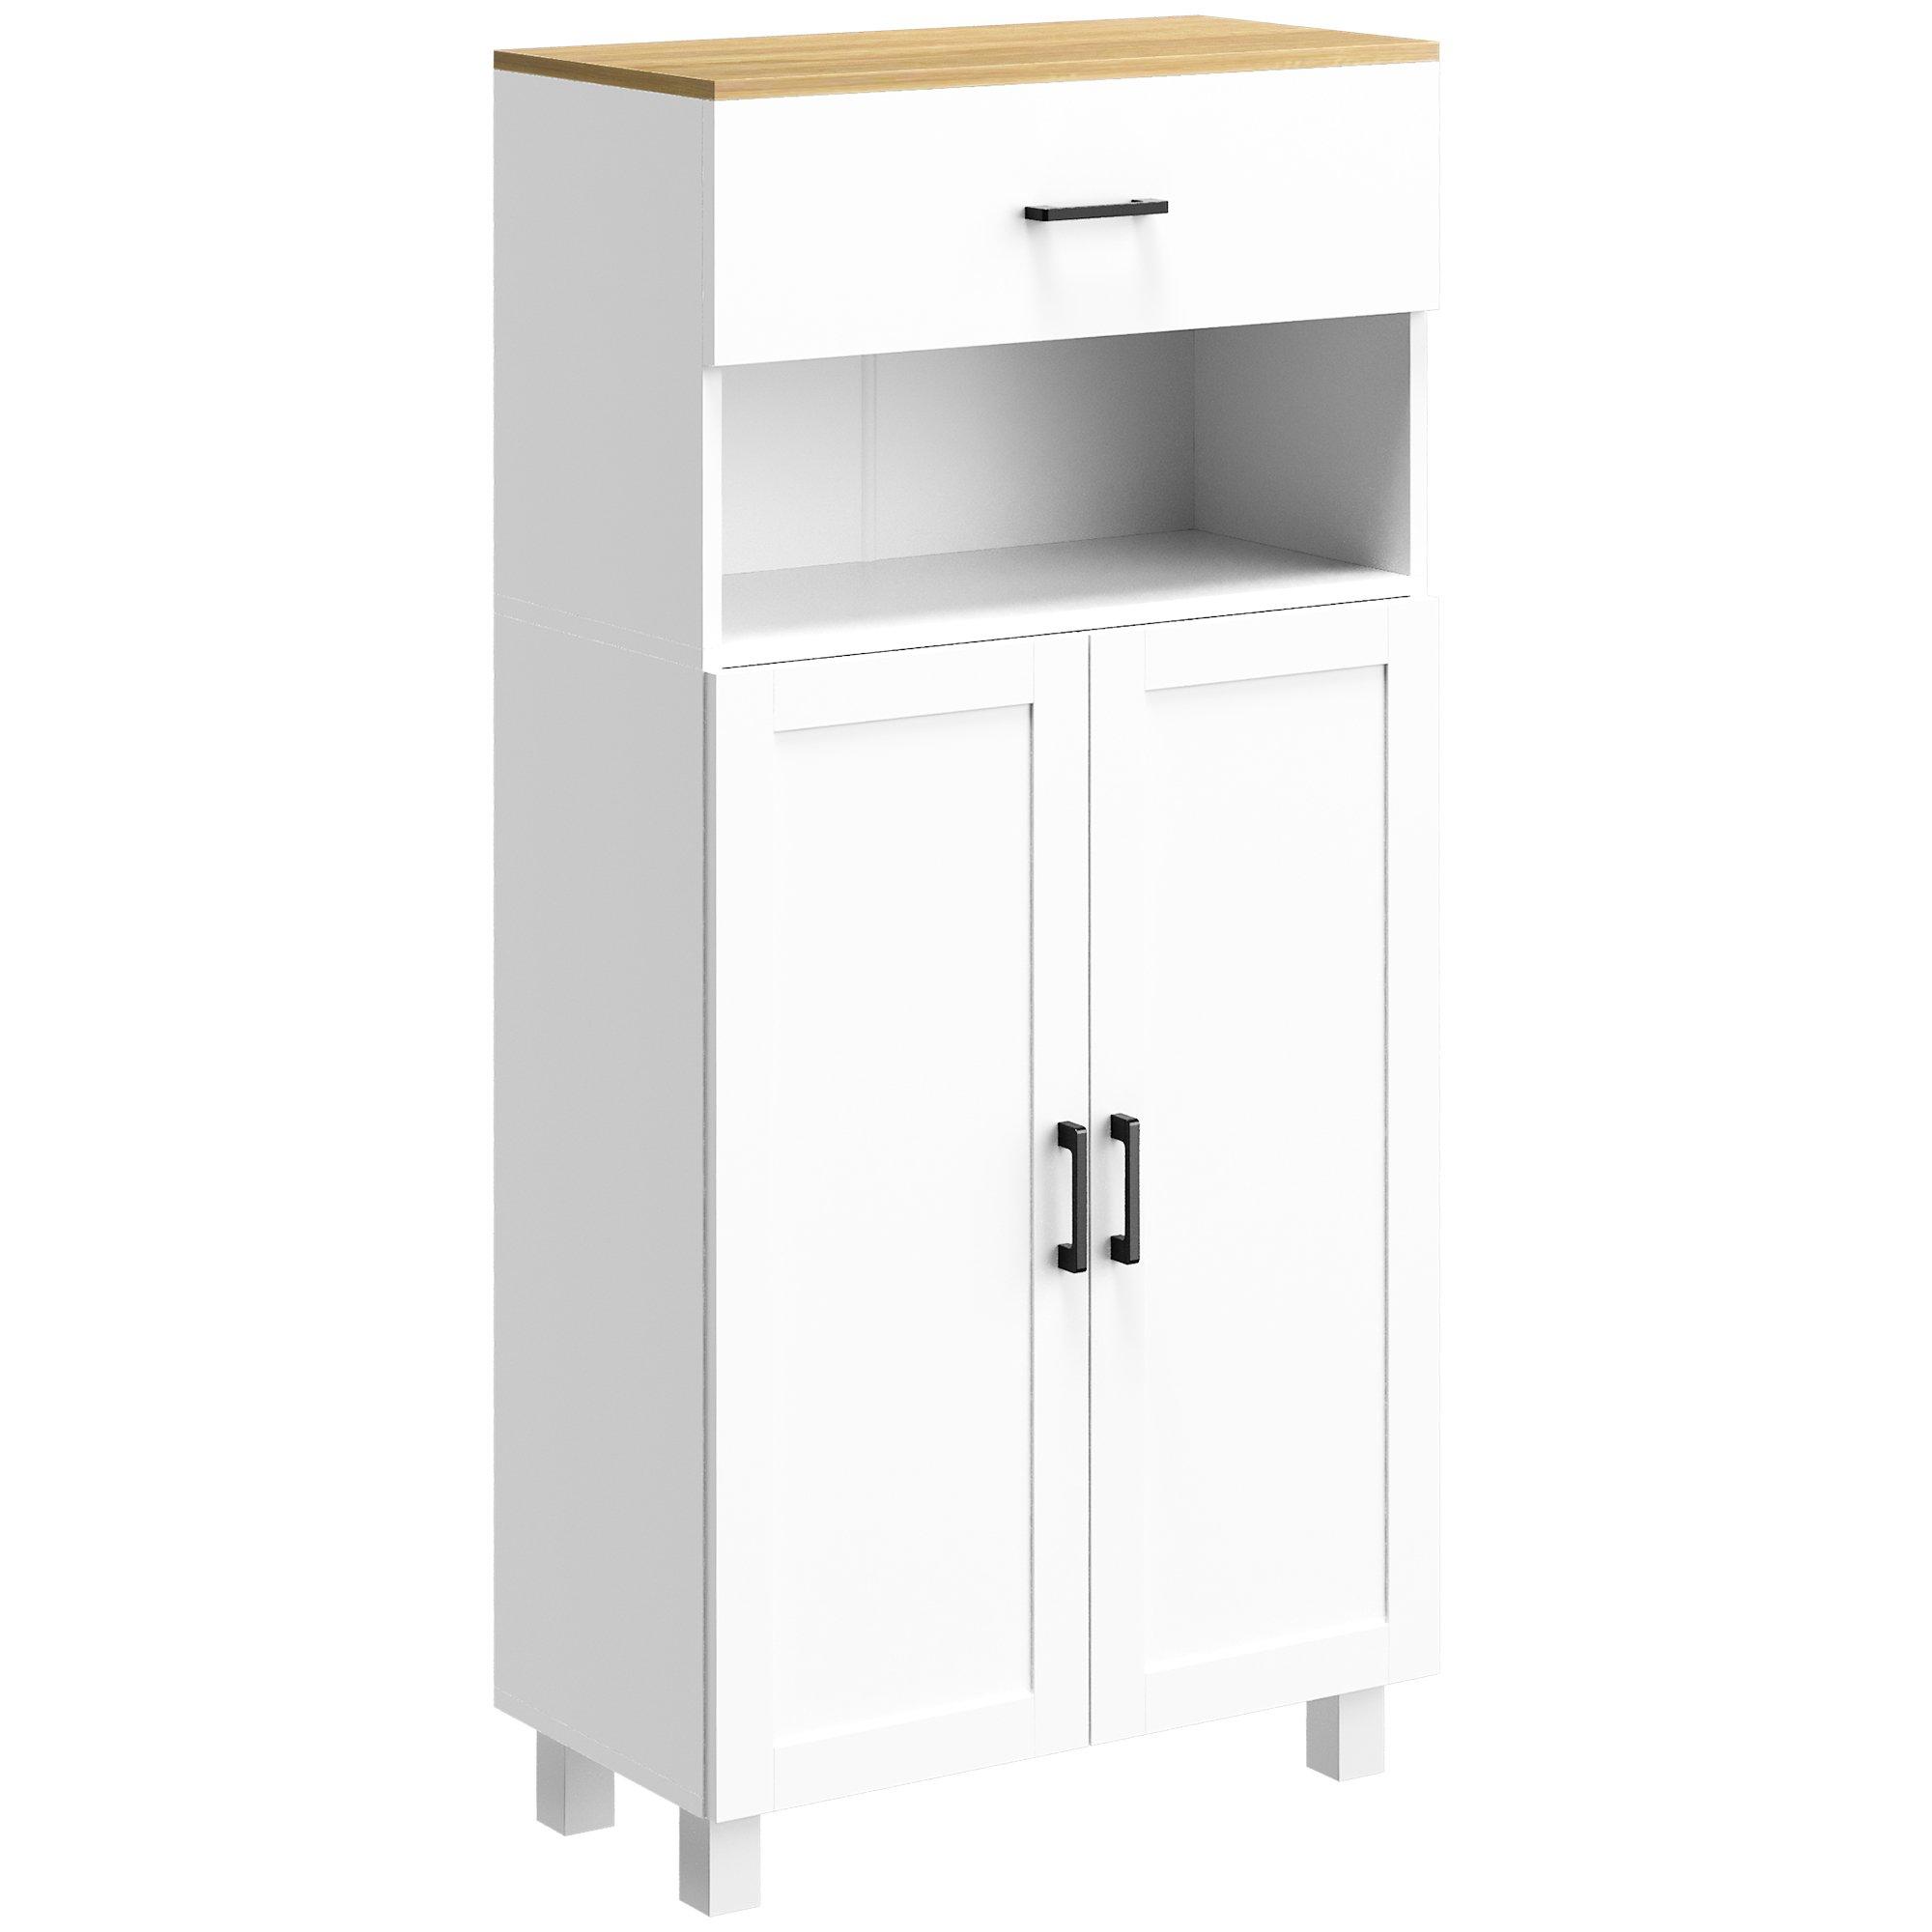 Freestanding Kitchen Storage Cabinet with Cupboard, Drawer